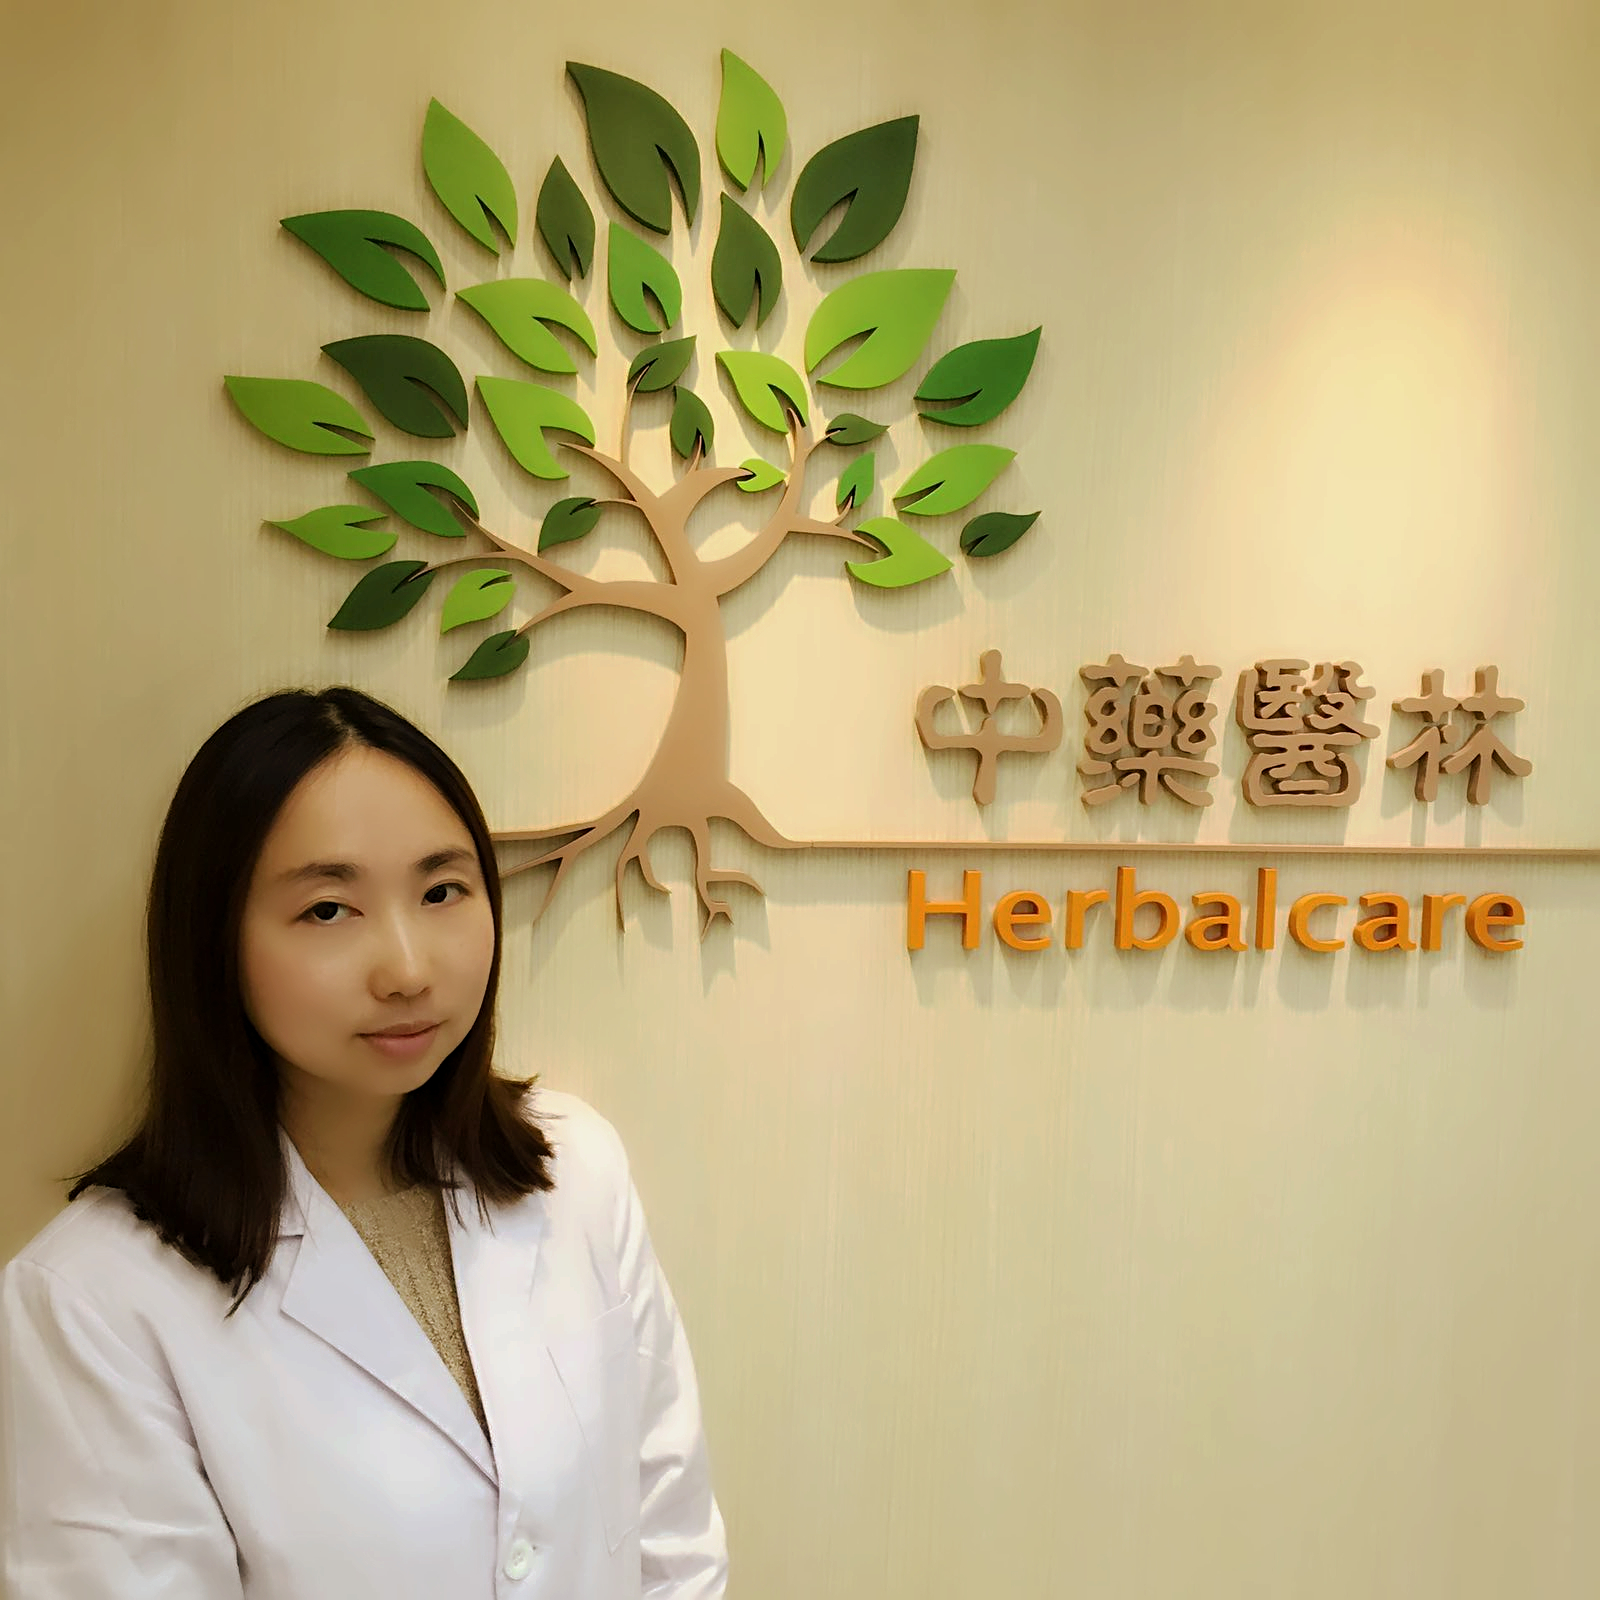 中醫診所 Chinese medicine clinic: 中藥醫林中醫診所